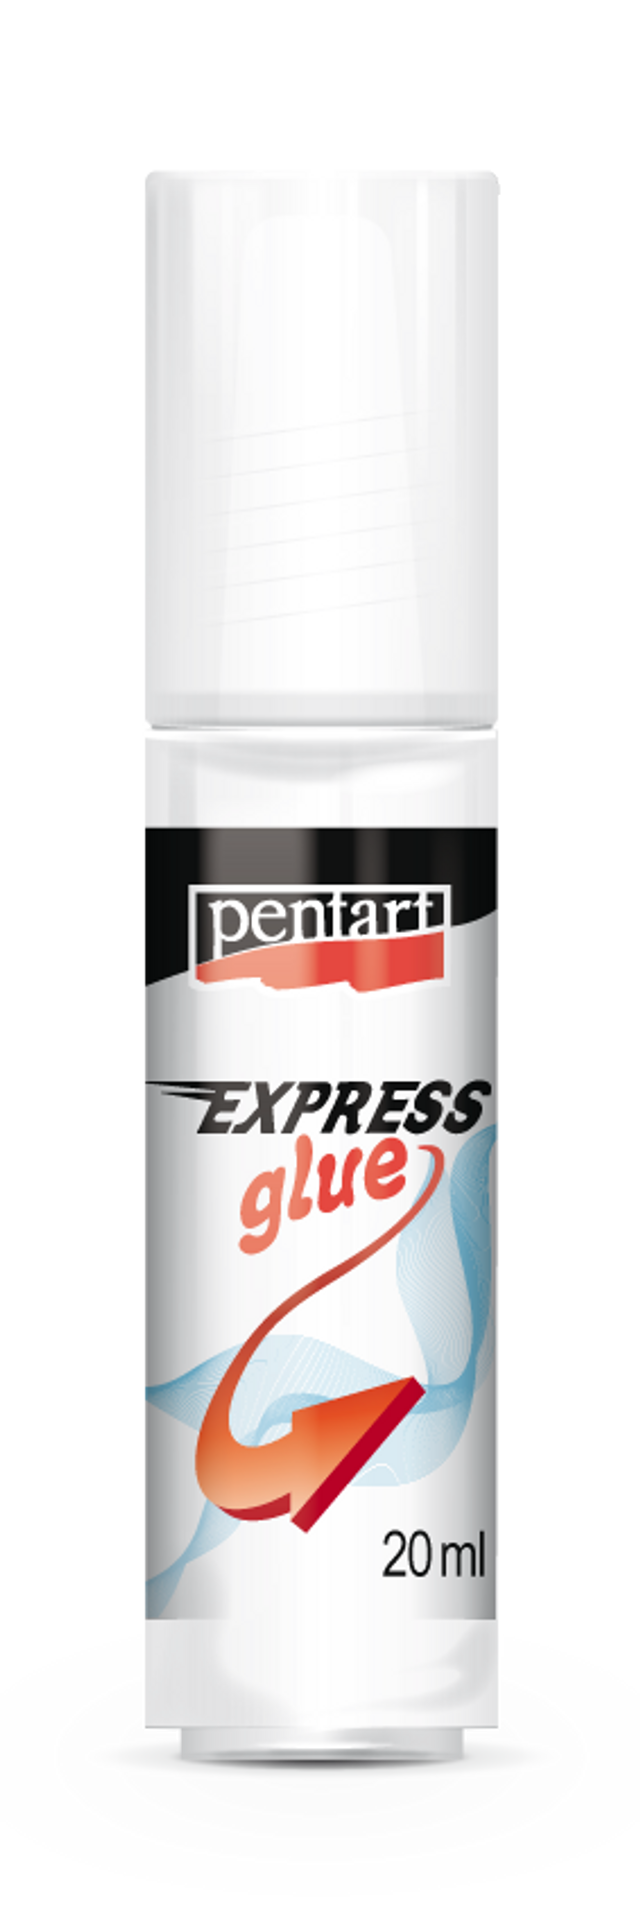 Pentart Express Glue - Decoupage Queen